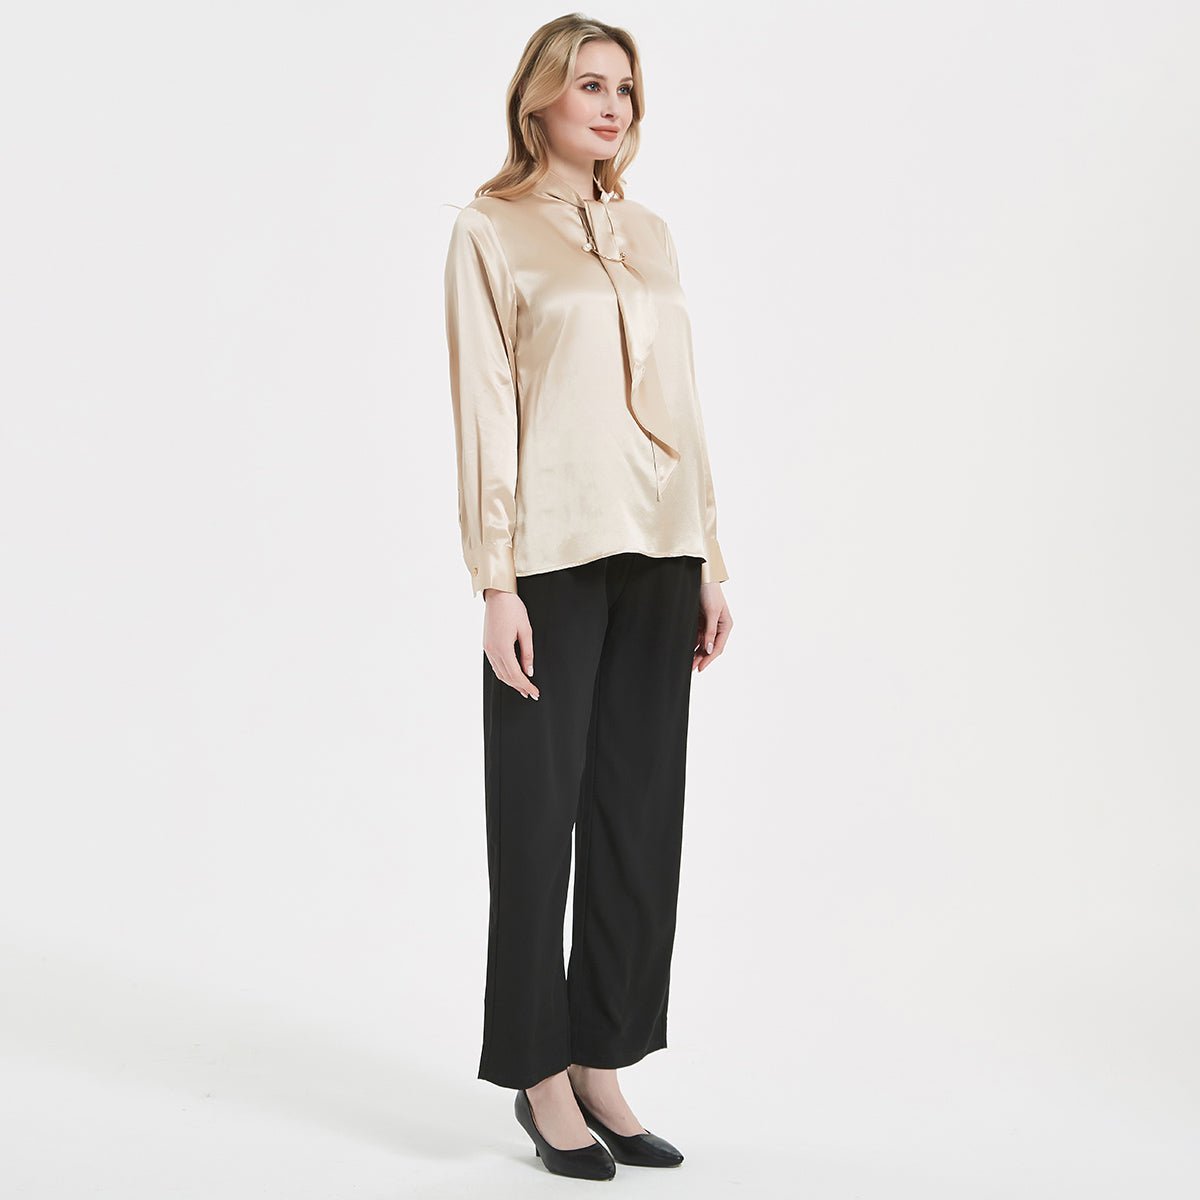 Blusa de seda elegante para mujer de 22 MM, camisa de seda de manga larga de seda pura 100%